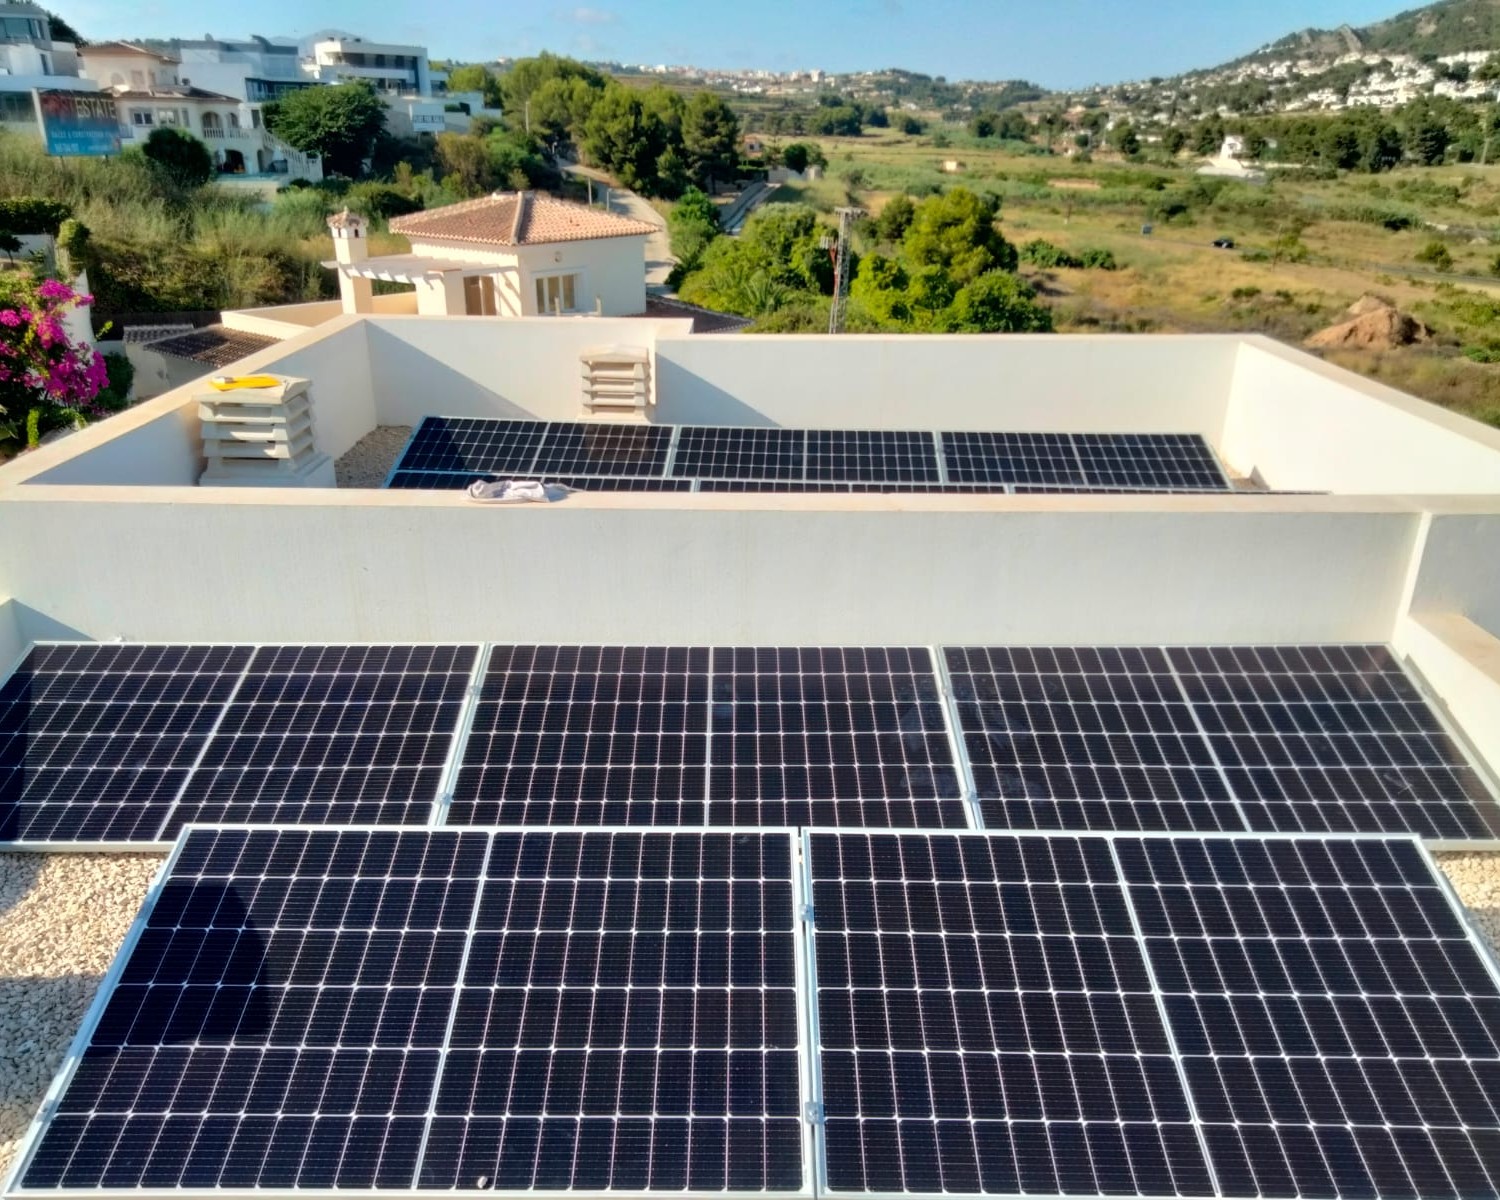 18X 385 wp Paneles Solares, Moraira, Alicante (Sistema híbrido)